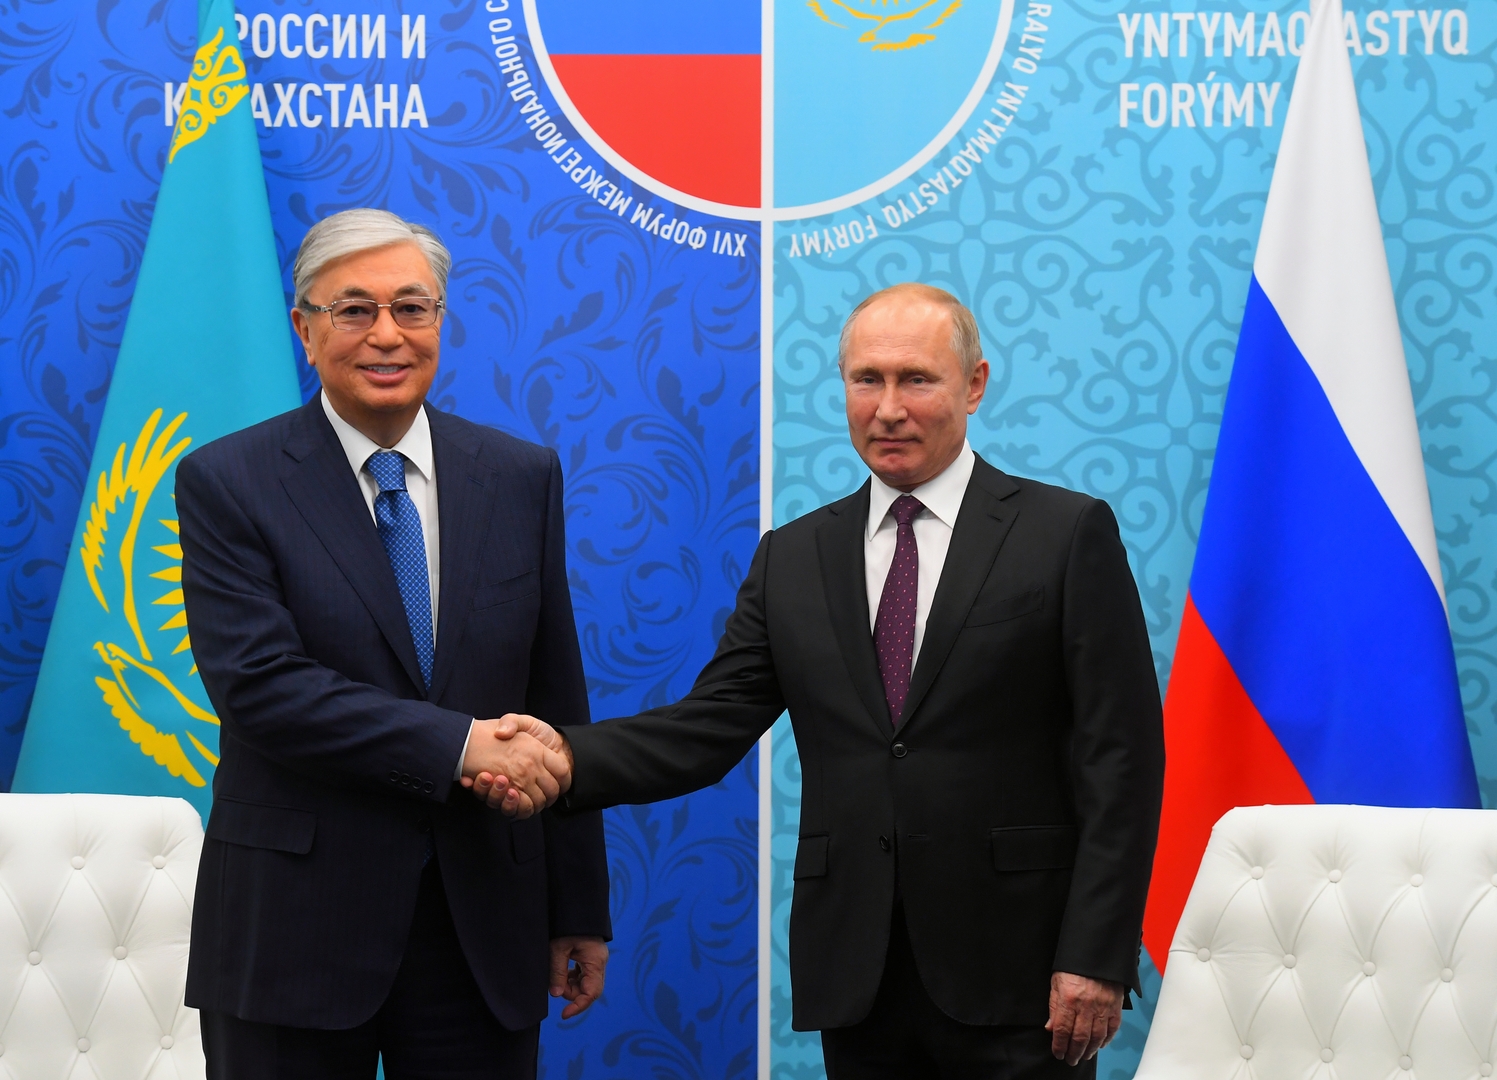 الكرملين: بوتين يبحث مع رئيس كازاخستان العلاقات الثنائية وقضايا إقليمية